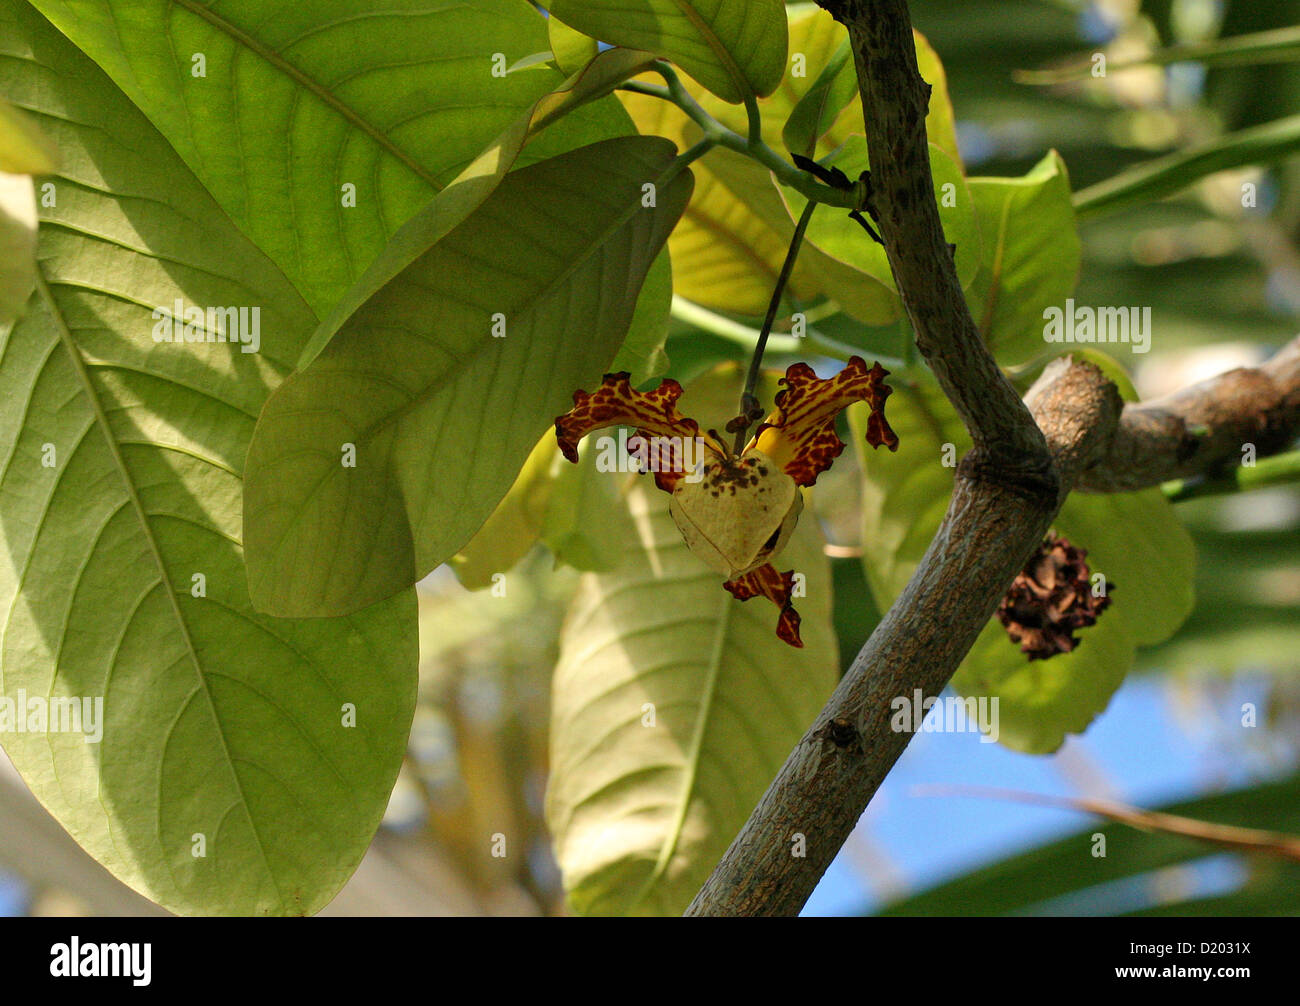 Blume des afrikanischen Orchidee Muskatnuss-Baum, Monodora Myristica, Annonaceae, aka Jamaica Muskatnuss oder Kalebasse Muskatnuss. Afrika. Stockfoto